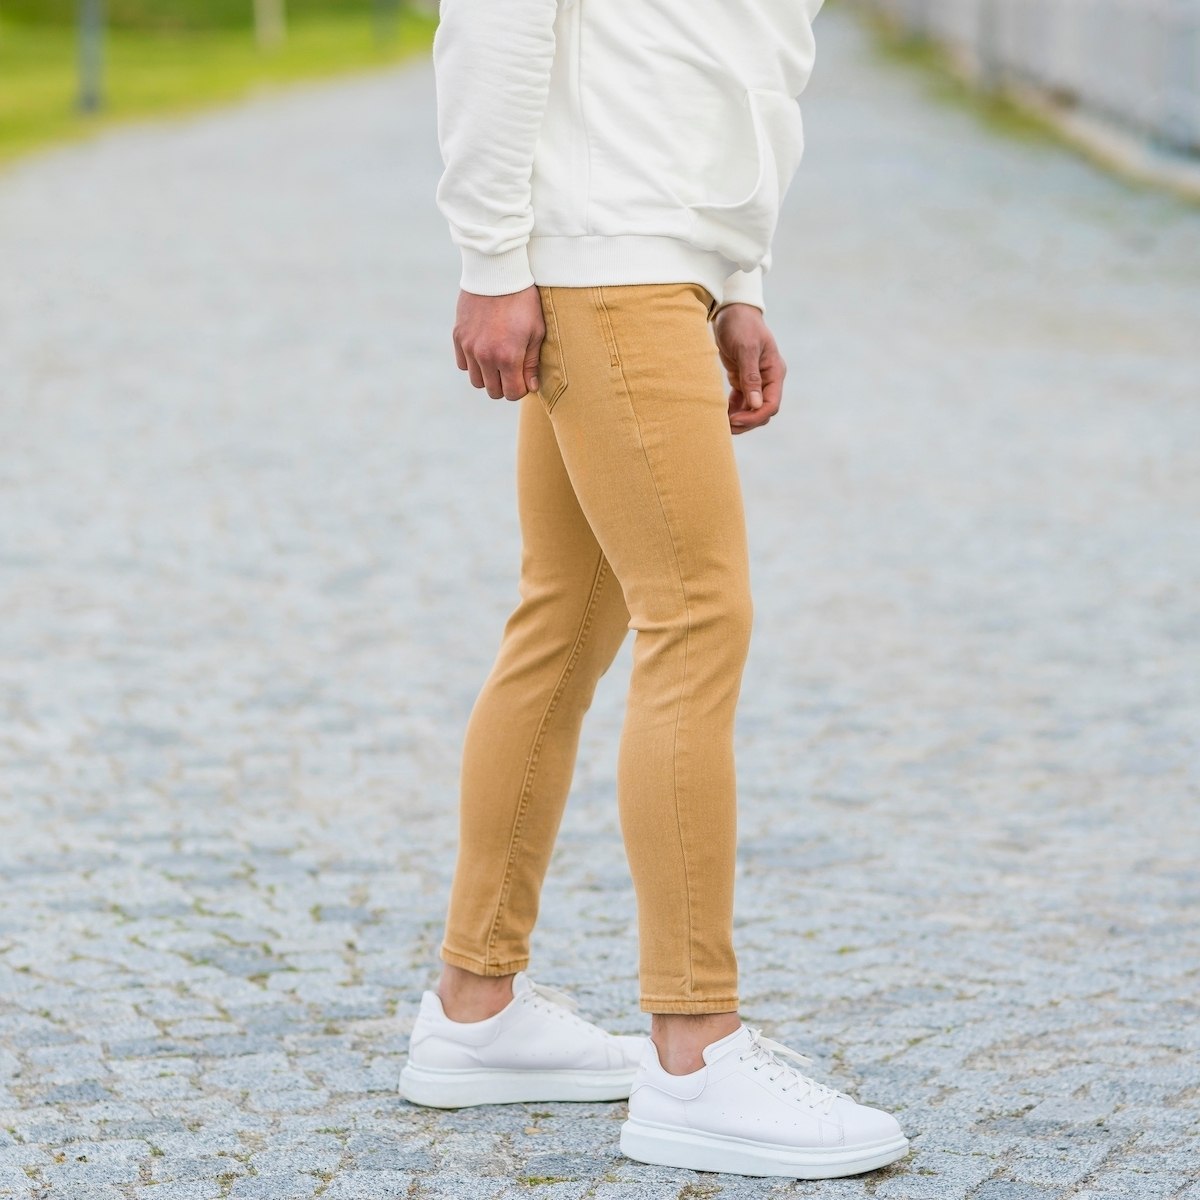 Men's Basic Skinny Jeans In Mustard - 2